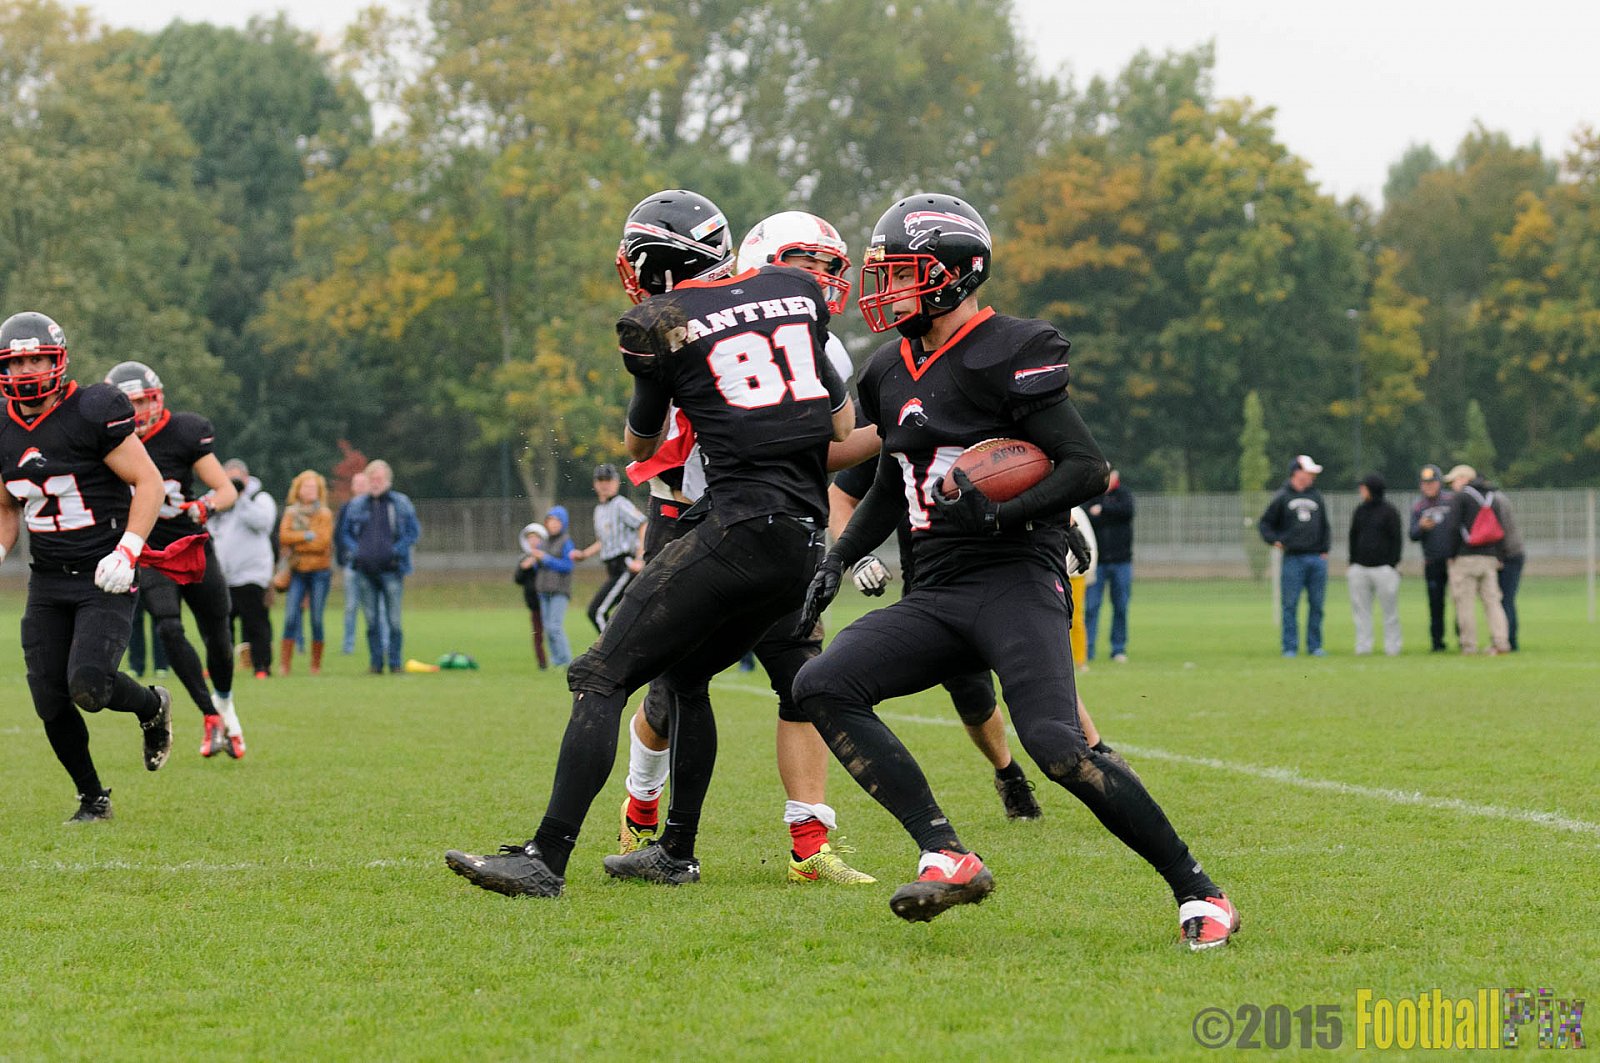 Düsseldorf Panther Prospects vs. Aces Hamm - 10.10.2015 VL NRW: Düsseldorf Panther Prospects vs. Aces Hamm (6:22)